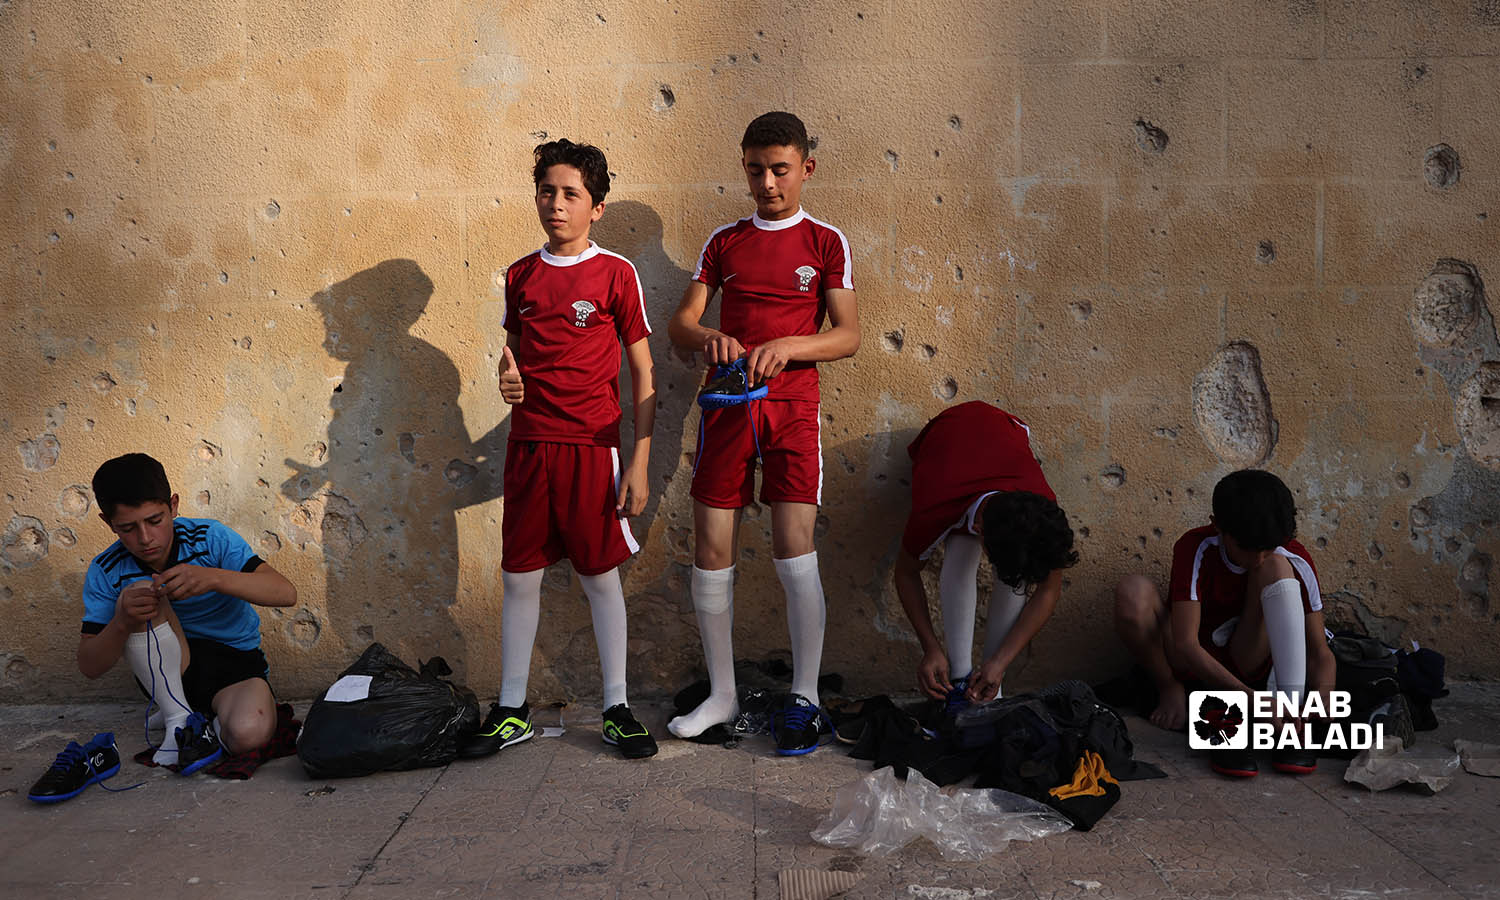 أطفال ناشئين يرتدون ملابسهم الرياضية على حيط مدمر في ملعب إدلب البلدي - 20 تشرين الثاني 2022 (عنب بلدي  انس الخولي)